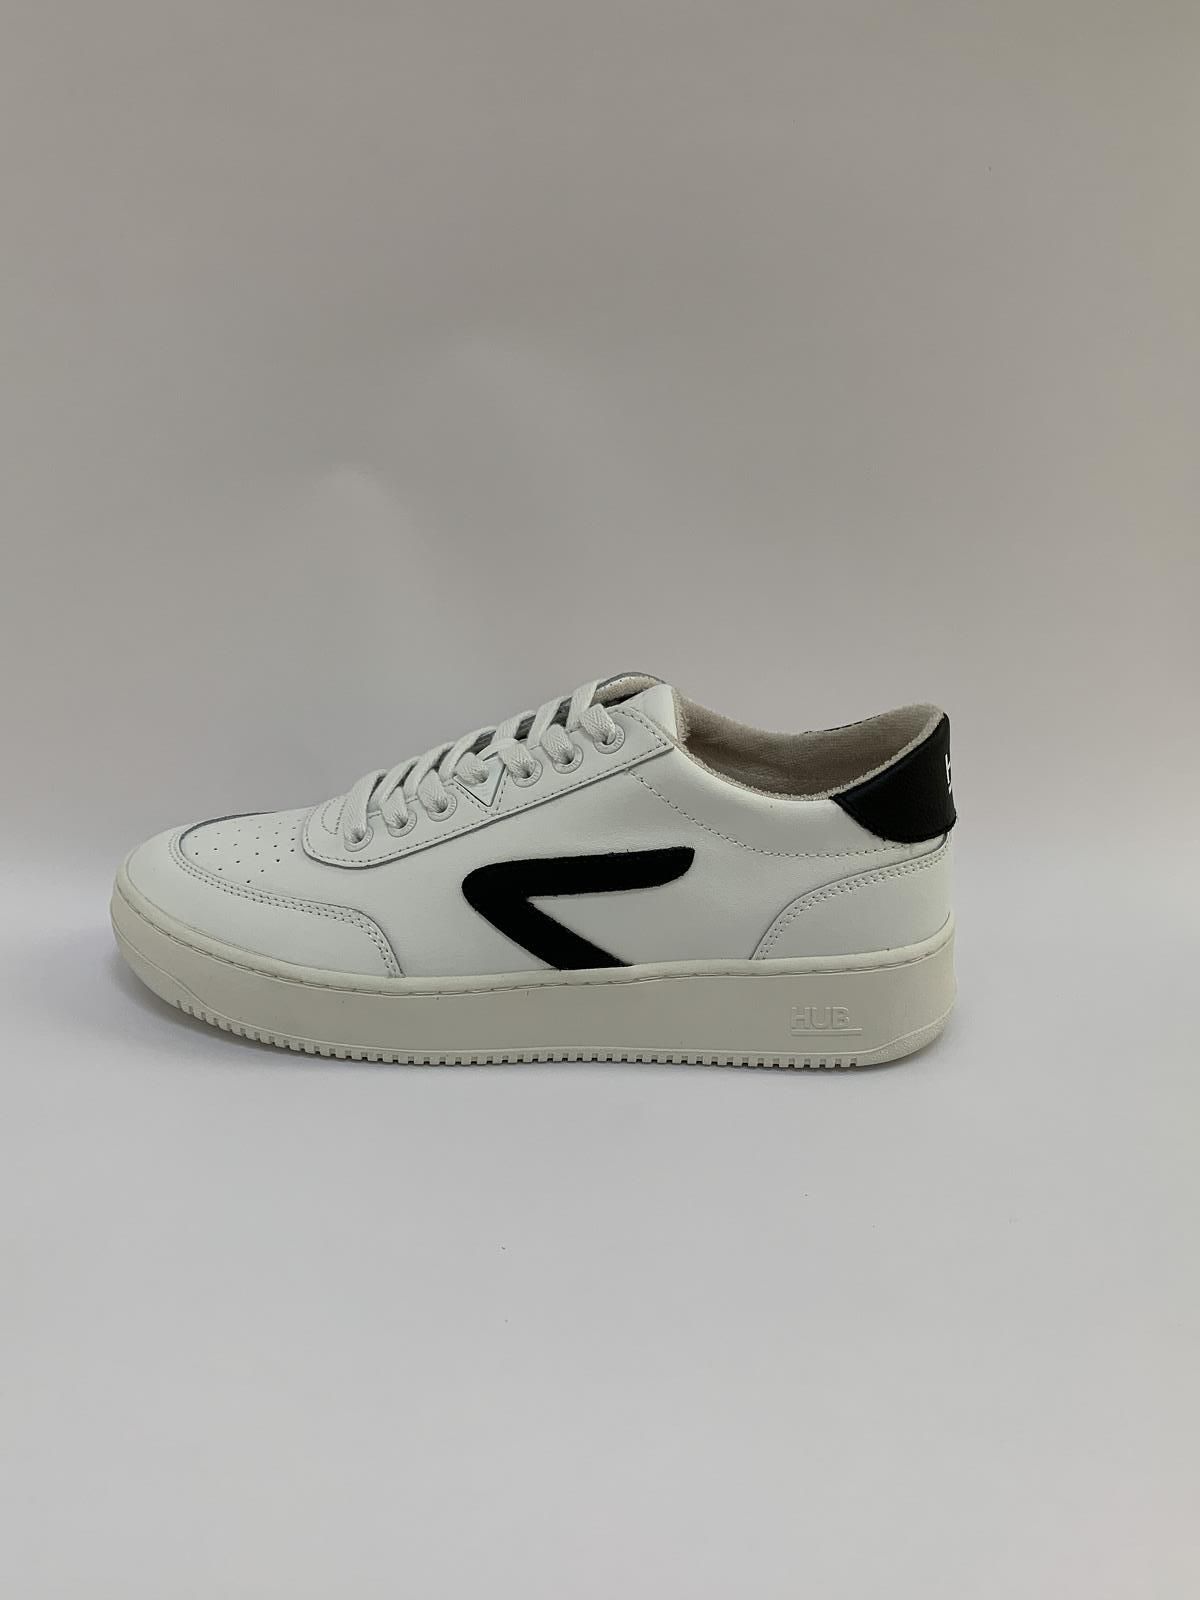 HUB Sneaker Wit+kleur heren (Sneaker Force Wit-Zwart - Baseline) - Schoenen Luca